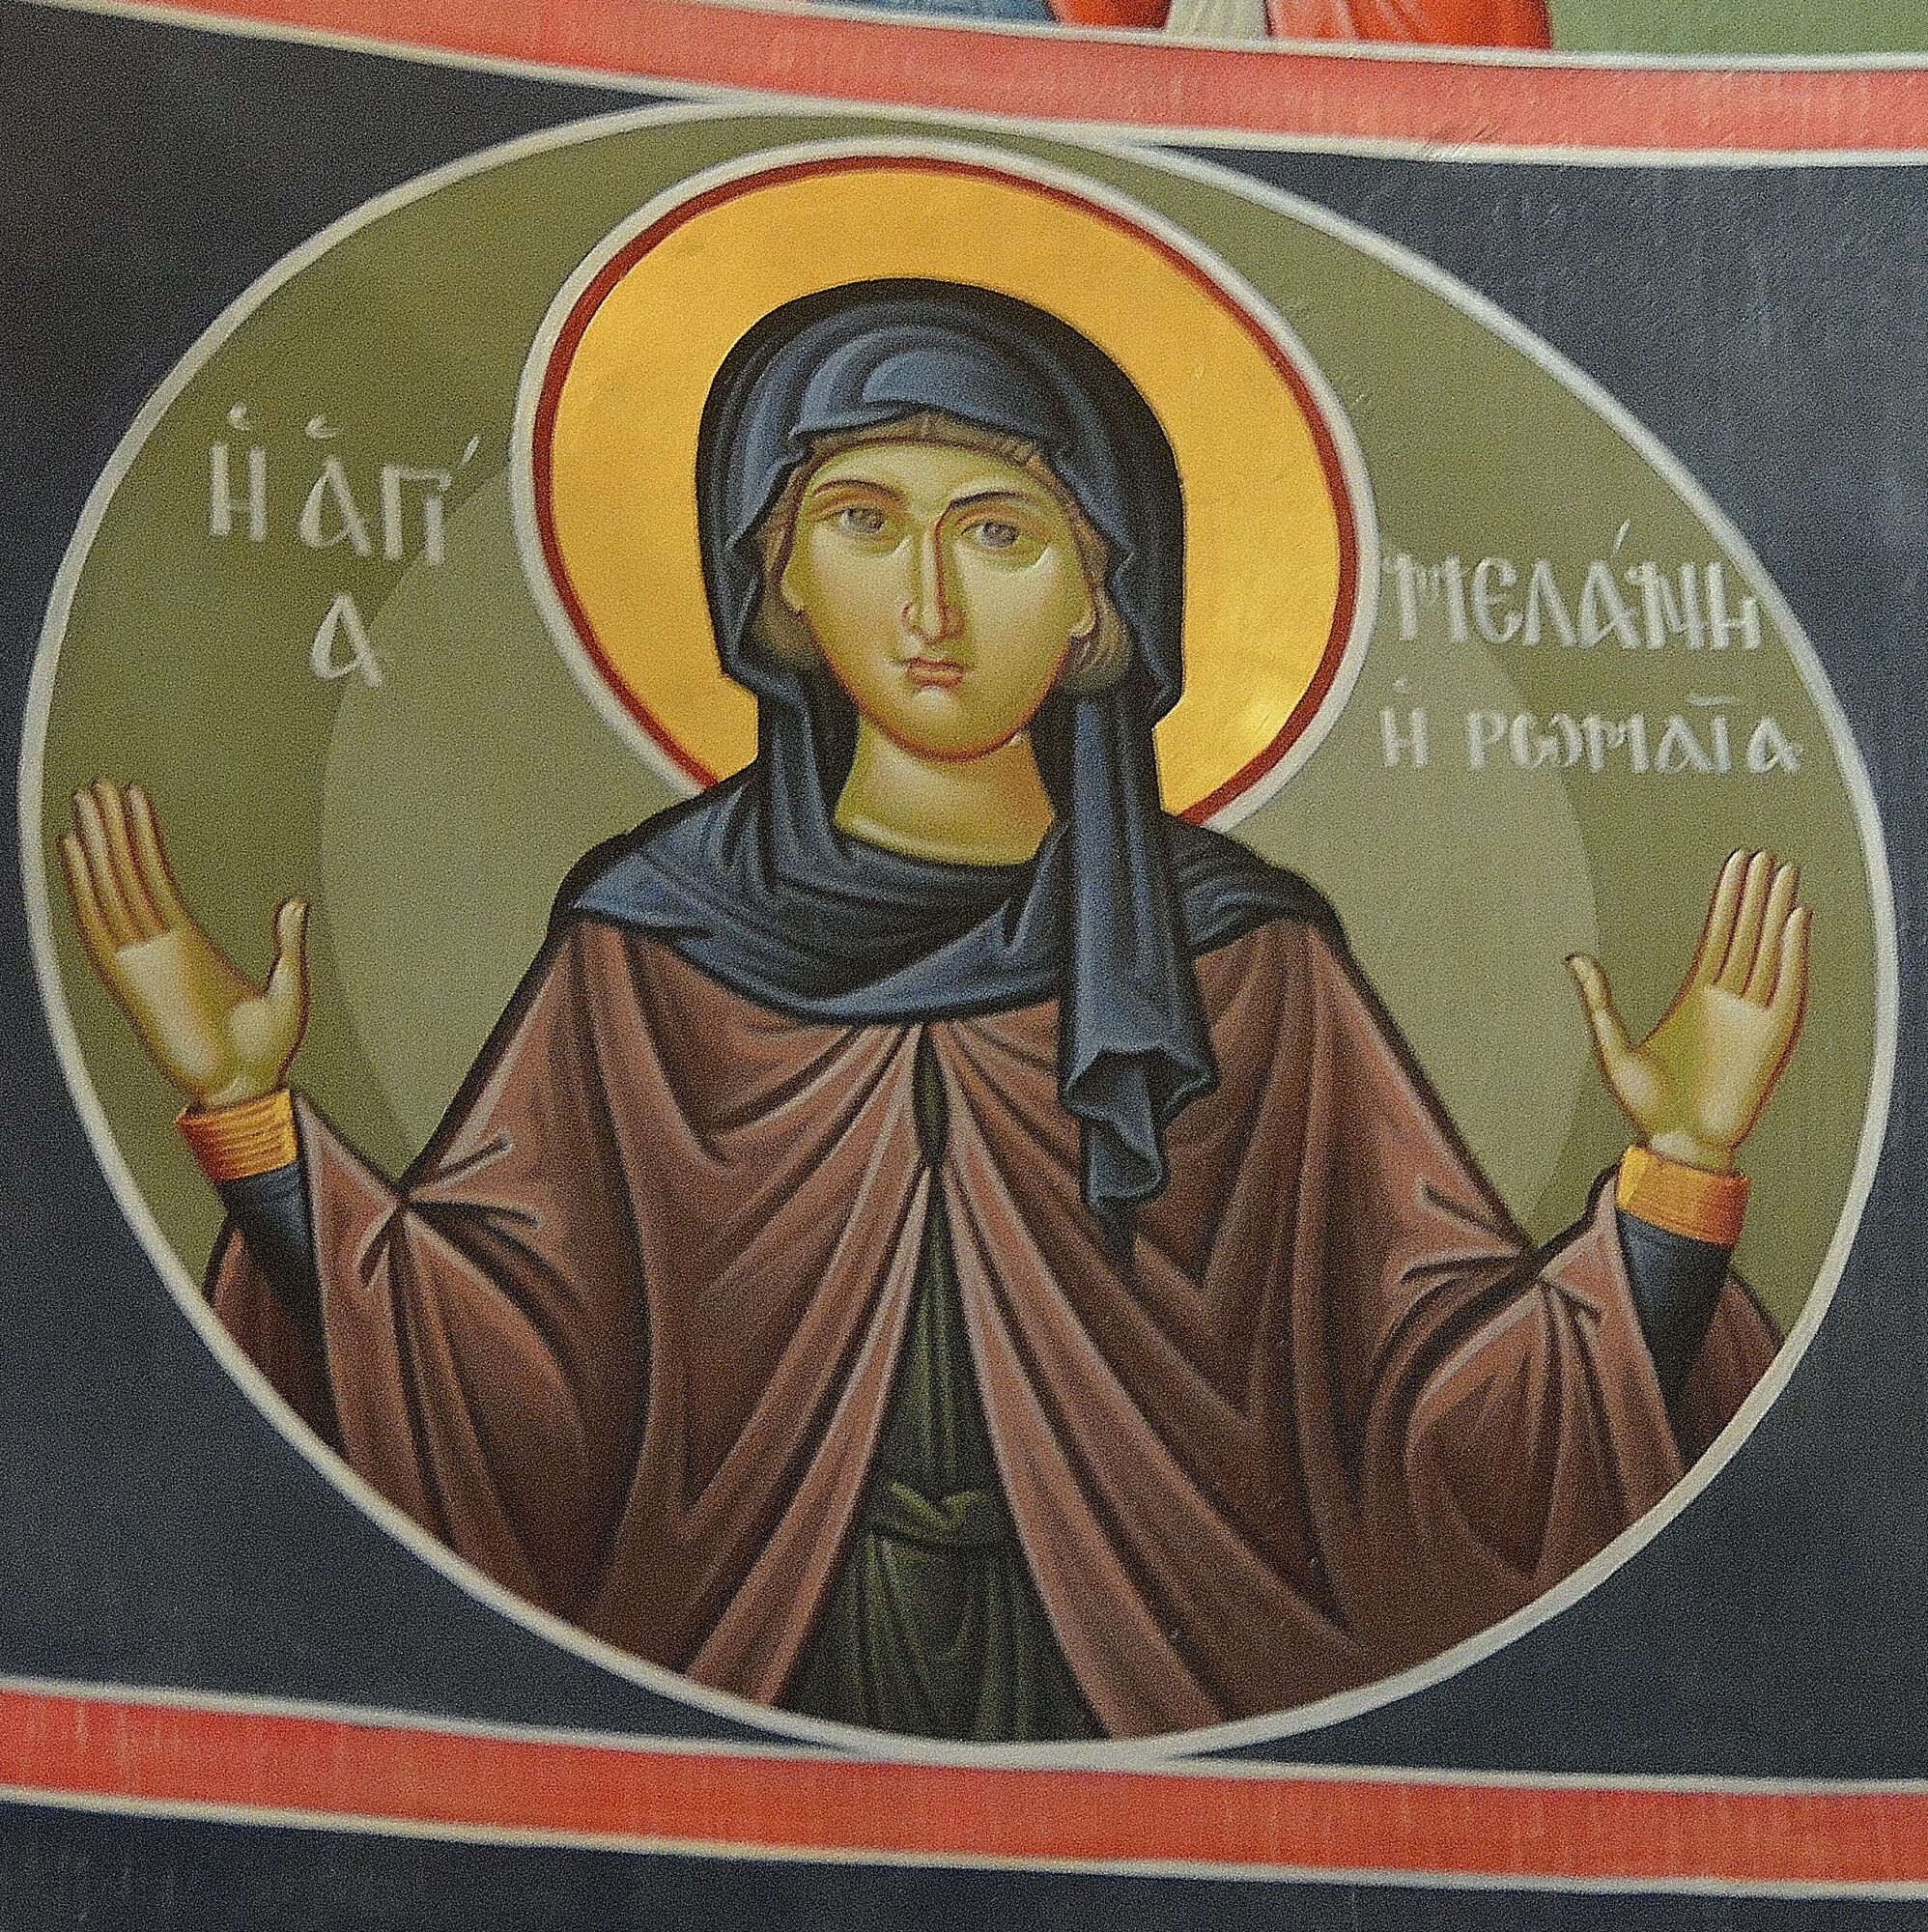 Преподобная Мелания Римская жила в 4-5 веках. Фреска из Монастыря святого Стефана в Метеорах